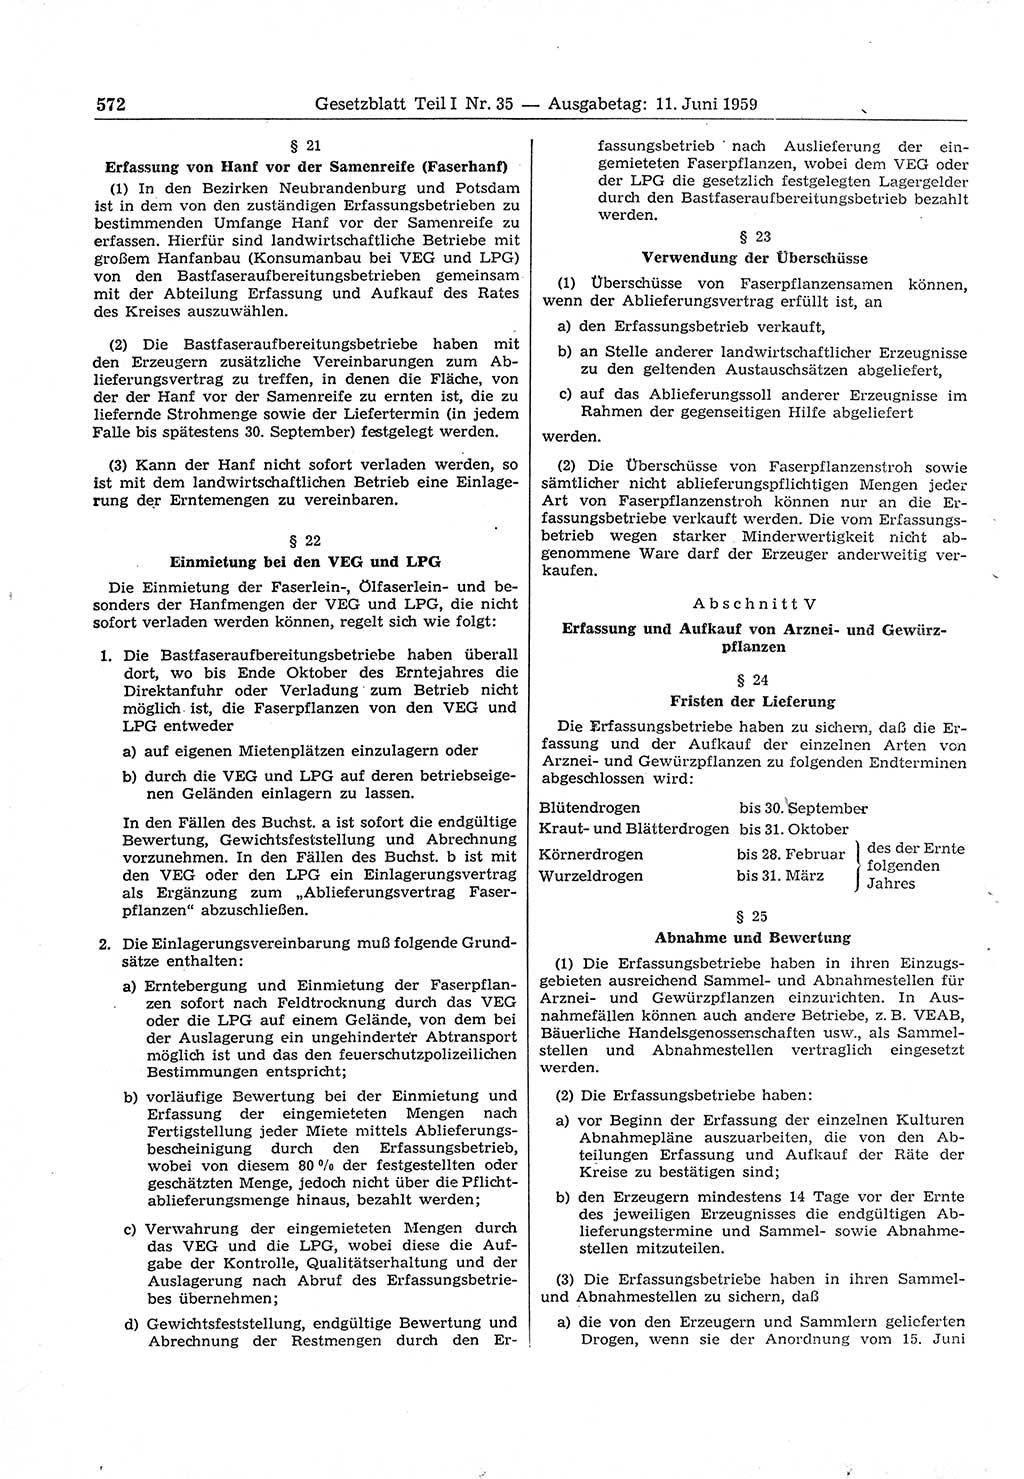 Gesetzblatt (GBl.) der Deutschen Demokratischen Republik (DDR) Teil Ⅰ 1959, Seite 572 (GBl. DDR Ⅰ 1959, S. 572)